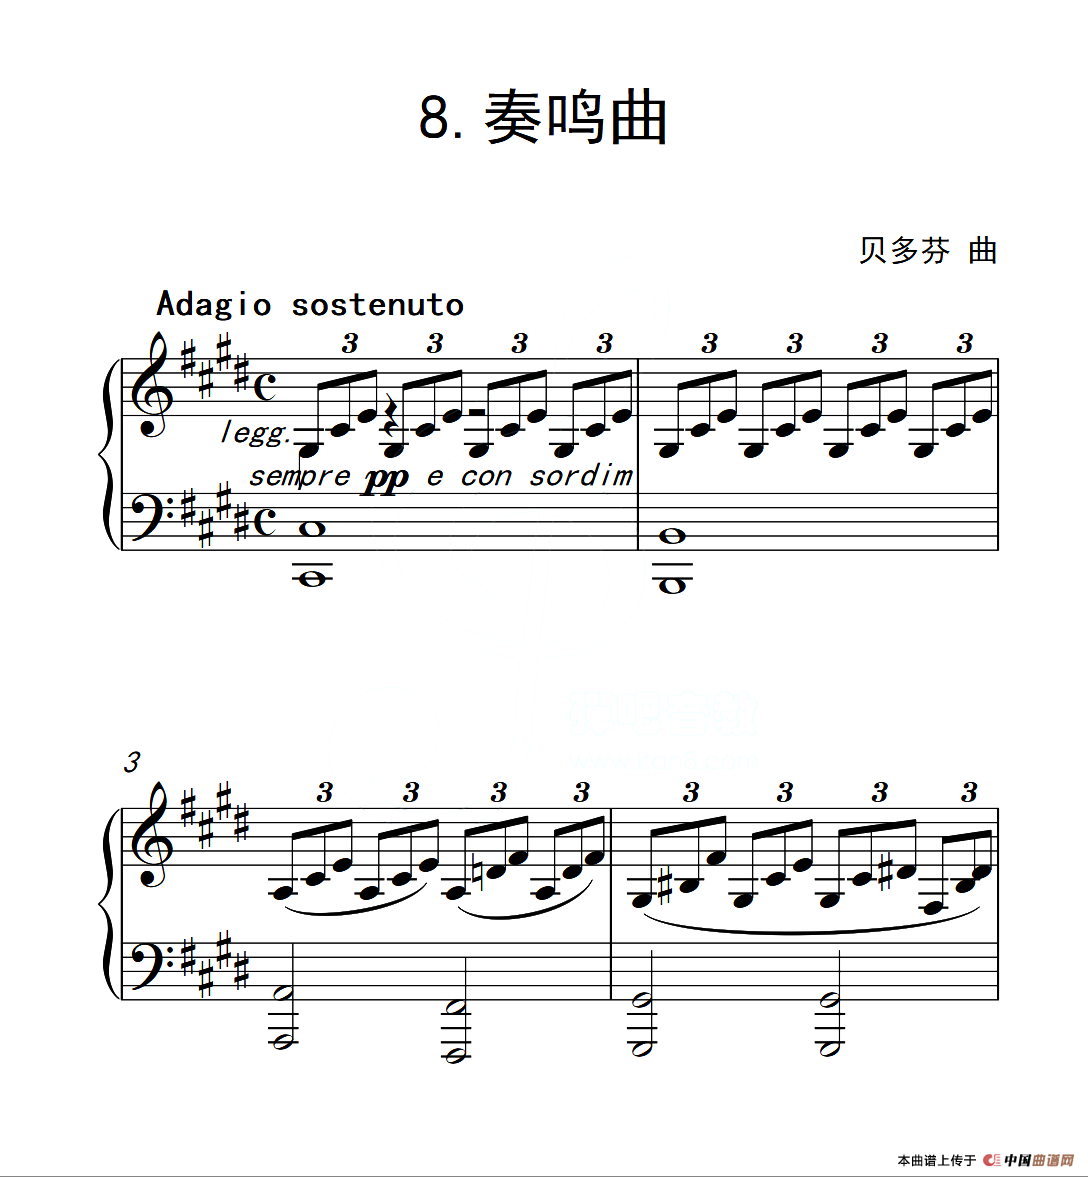 钢琴考级6-8级谱子(钢琴6级考级必弹曲目谱子)